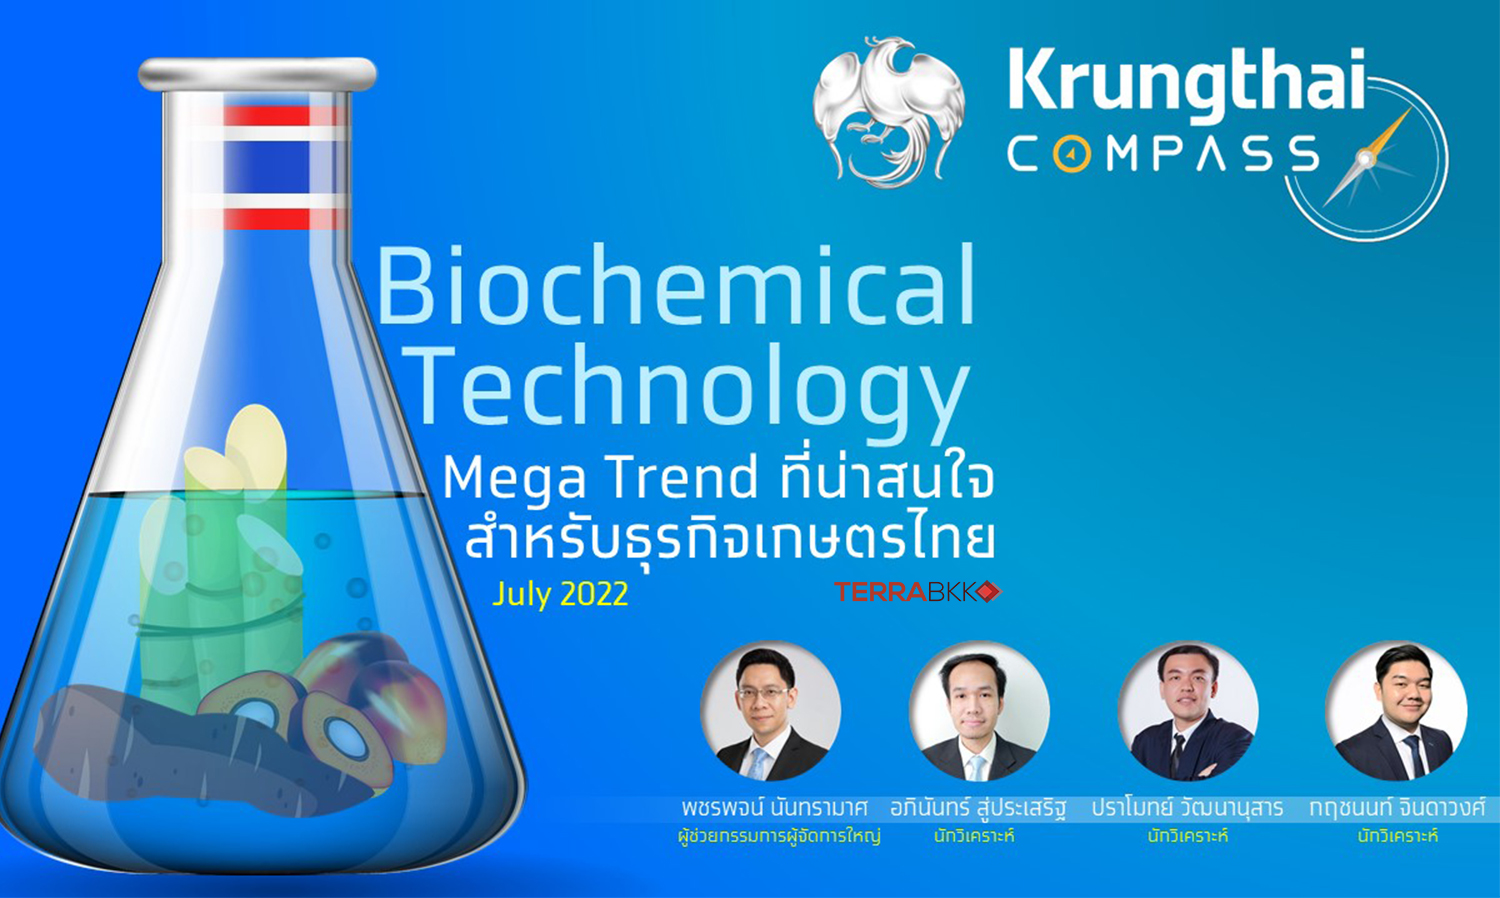 กรุงไทยชี้เทรนด์ผลิตภัณฑ์ชีวภาพกลุ่ม Biochemical มาแรง เป็นโอกาสสร้างมูลค่าเพิ่มภาคเกษตรไทย 